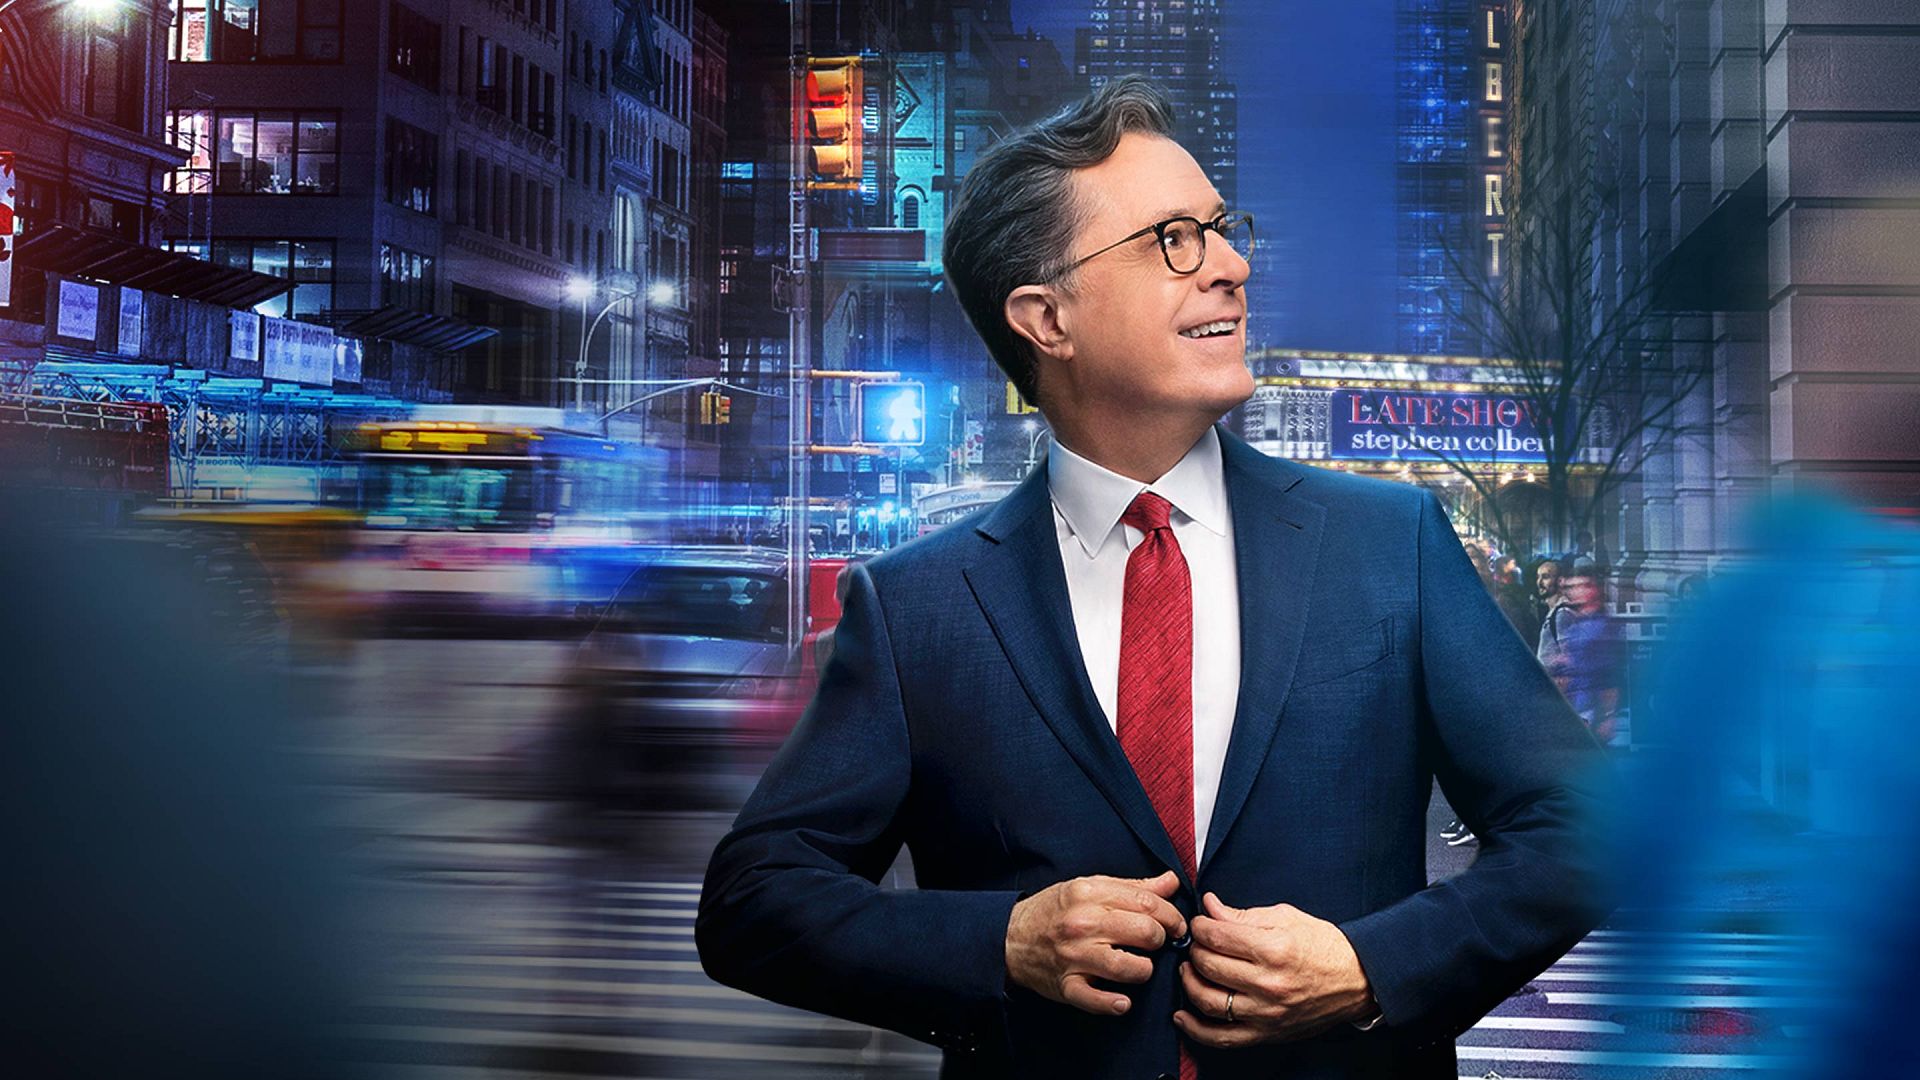 het doel Productief In de omgeving van The Late Show with Stephen Colbert (Official Site) Watch on CBS